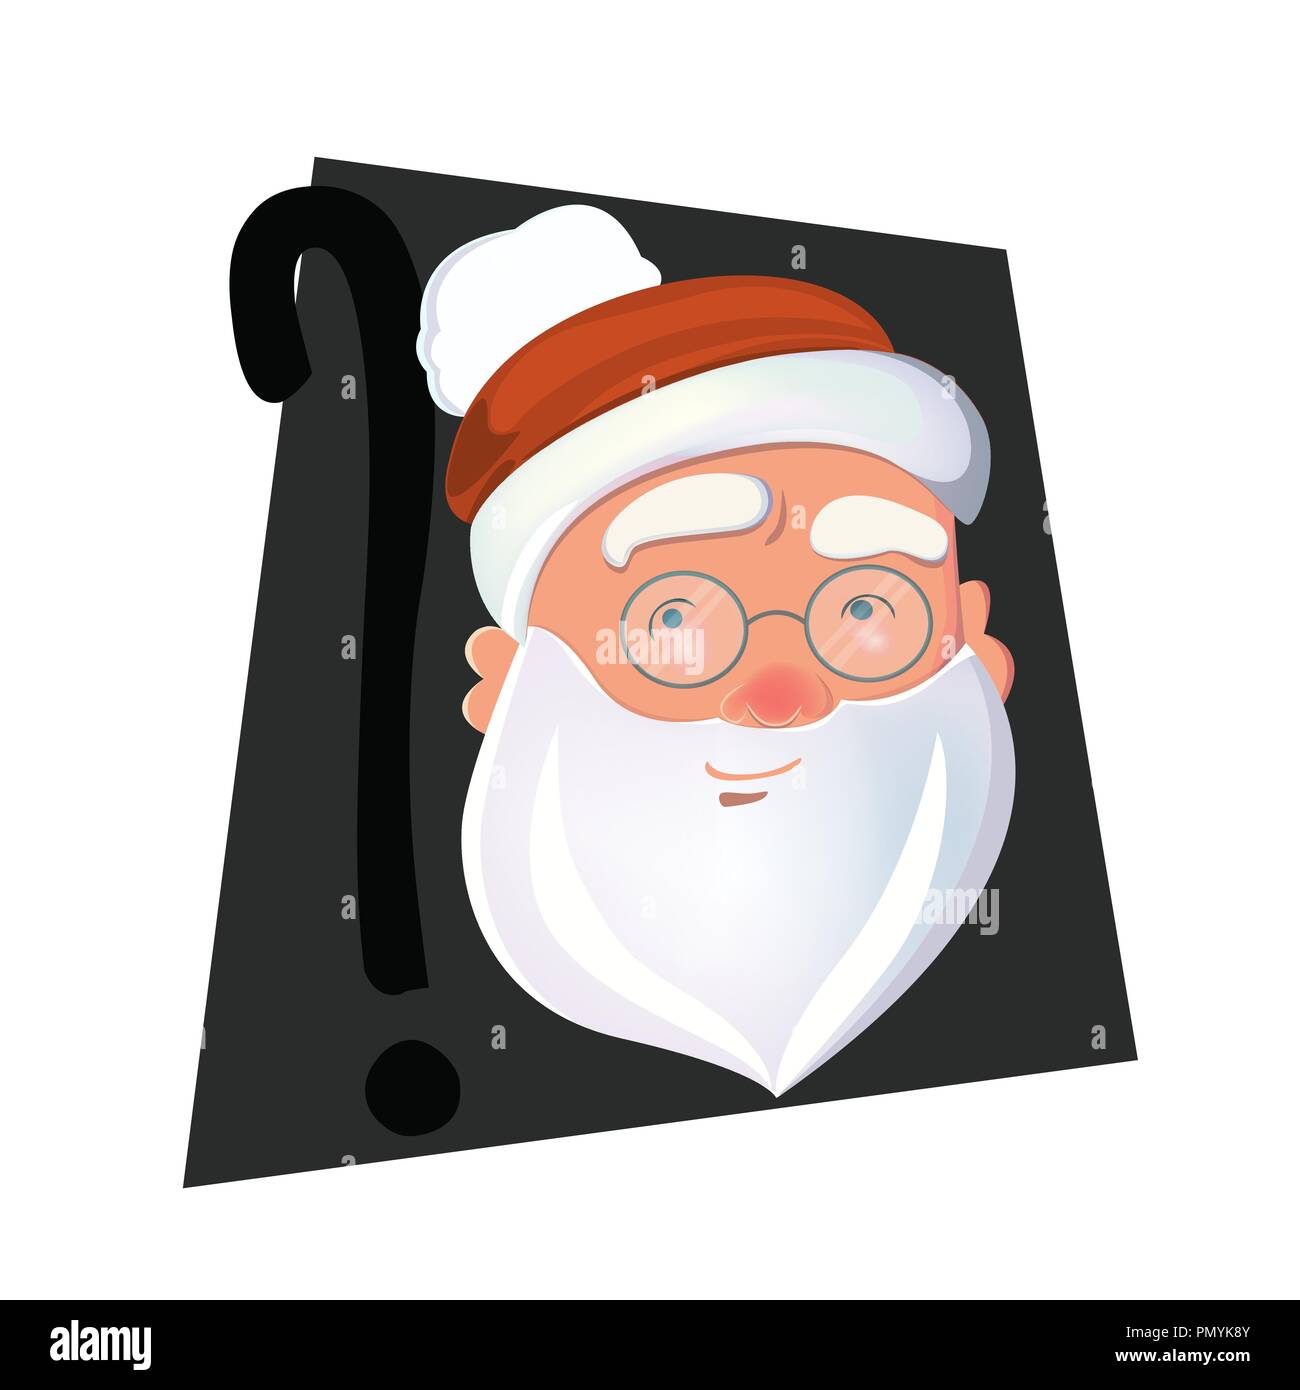 Secret santa cartoon Cut Out Stock Images & Pictures - Alamy